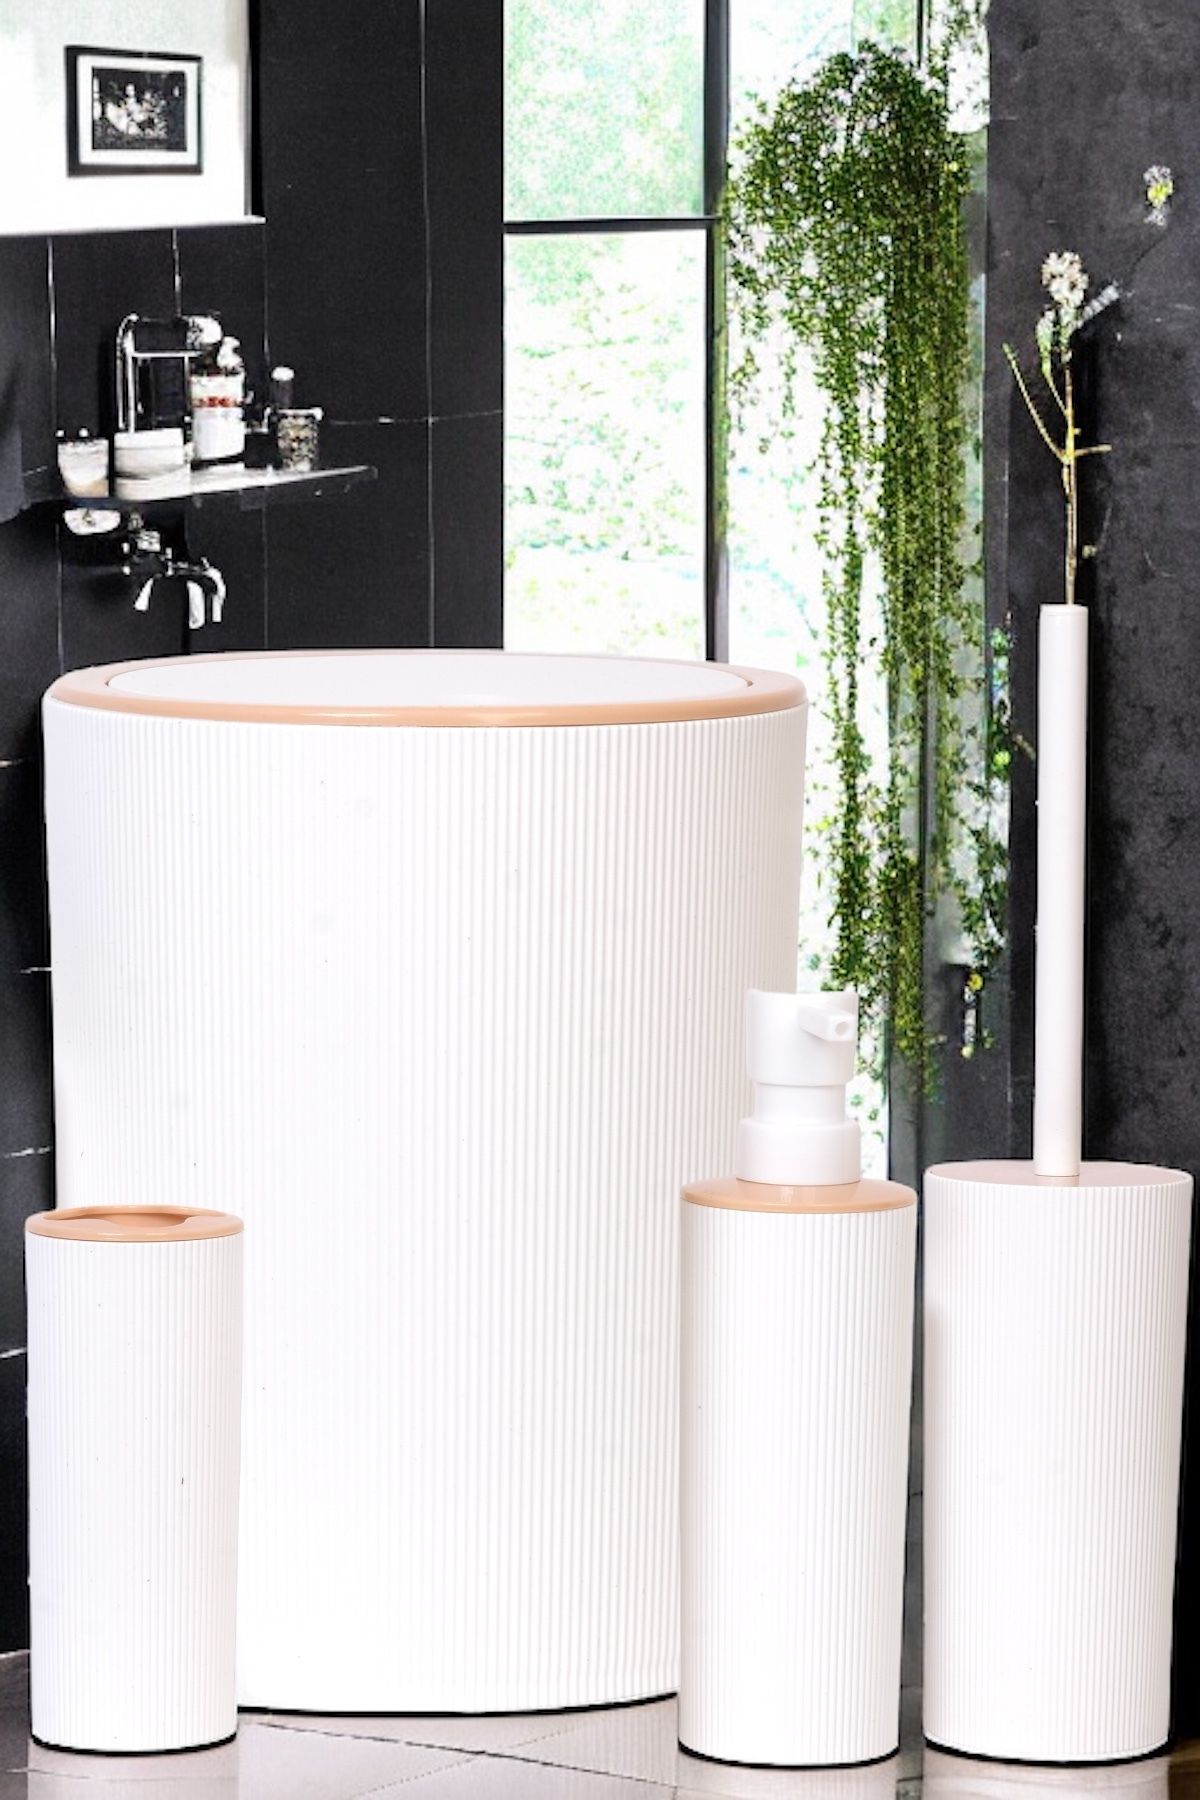 Decorev Lüks 4'lü Banyo Seti Şık Tasarımlı Banyo Takımı